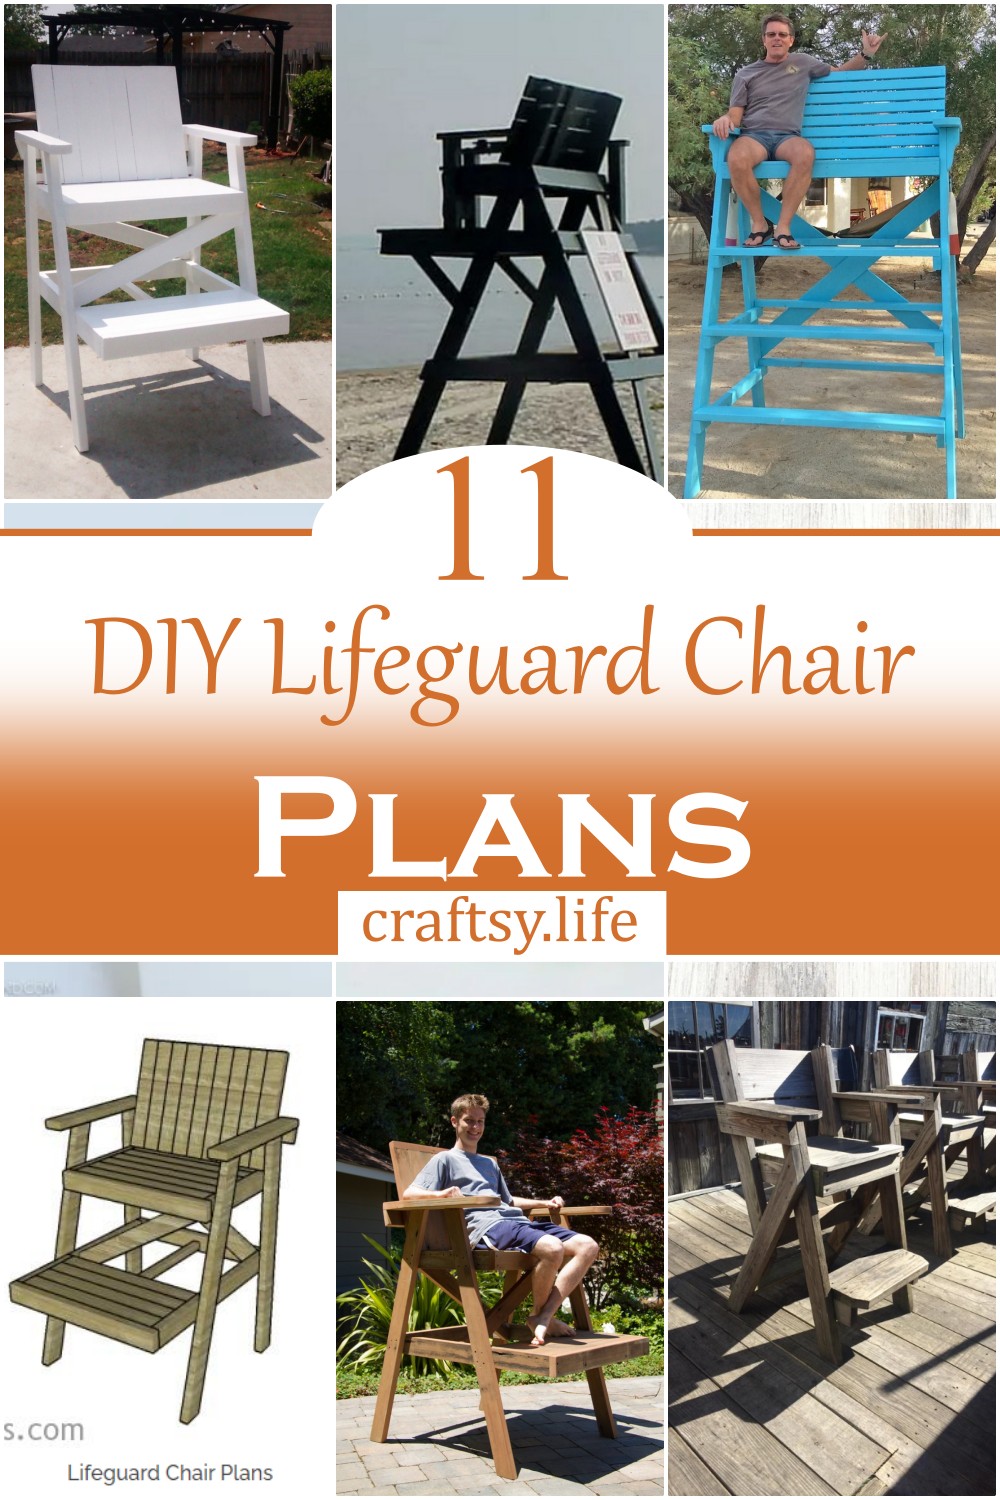 DIY Lifeguard Chair Plans